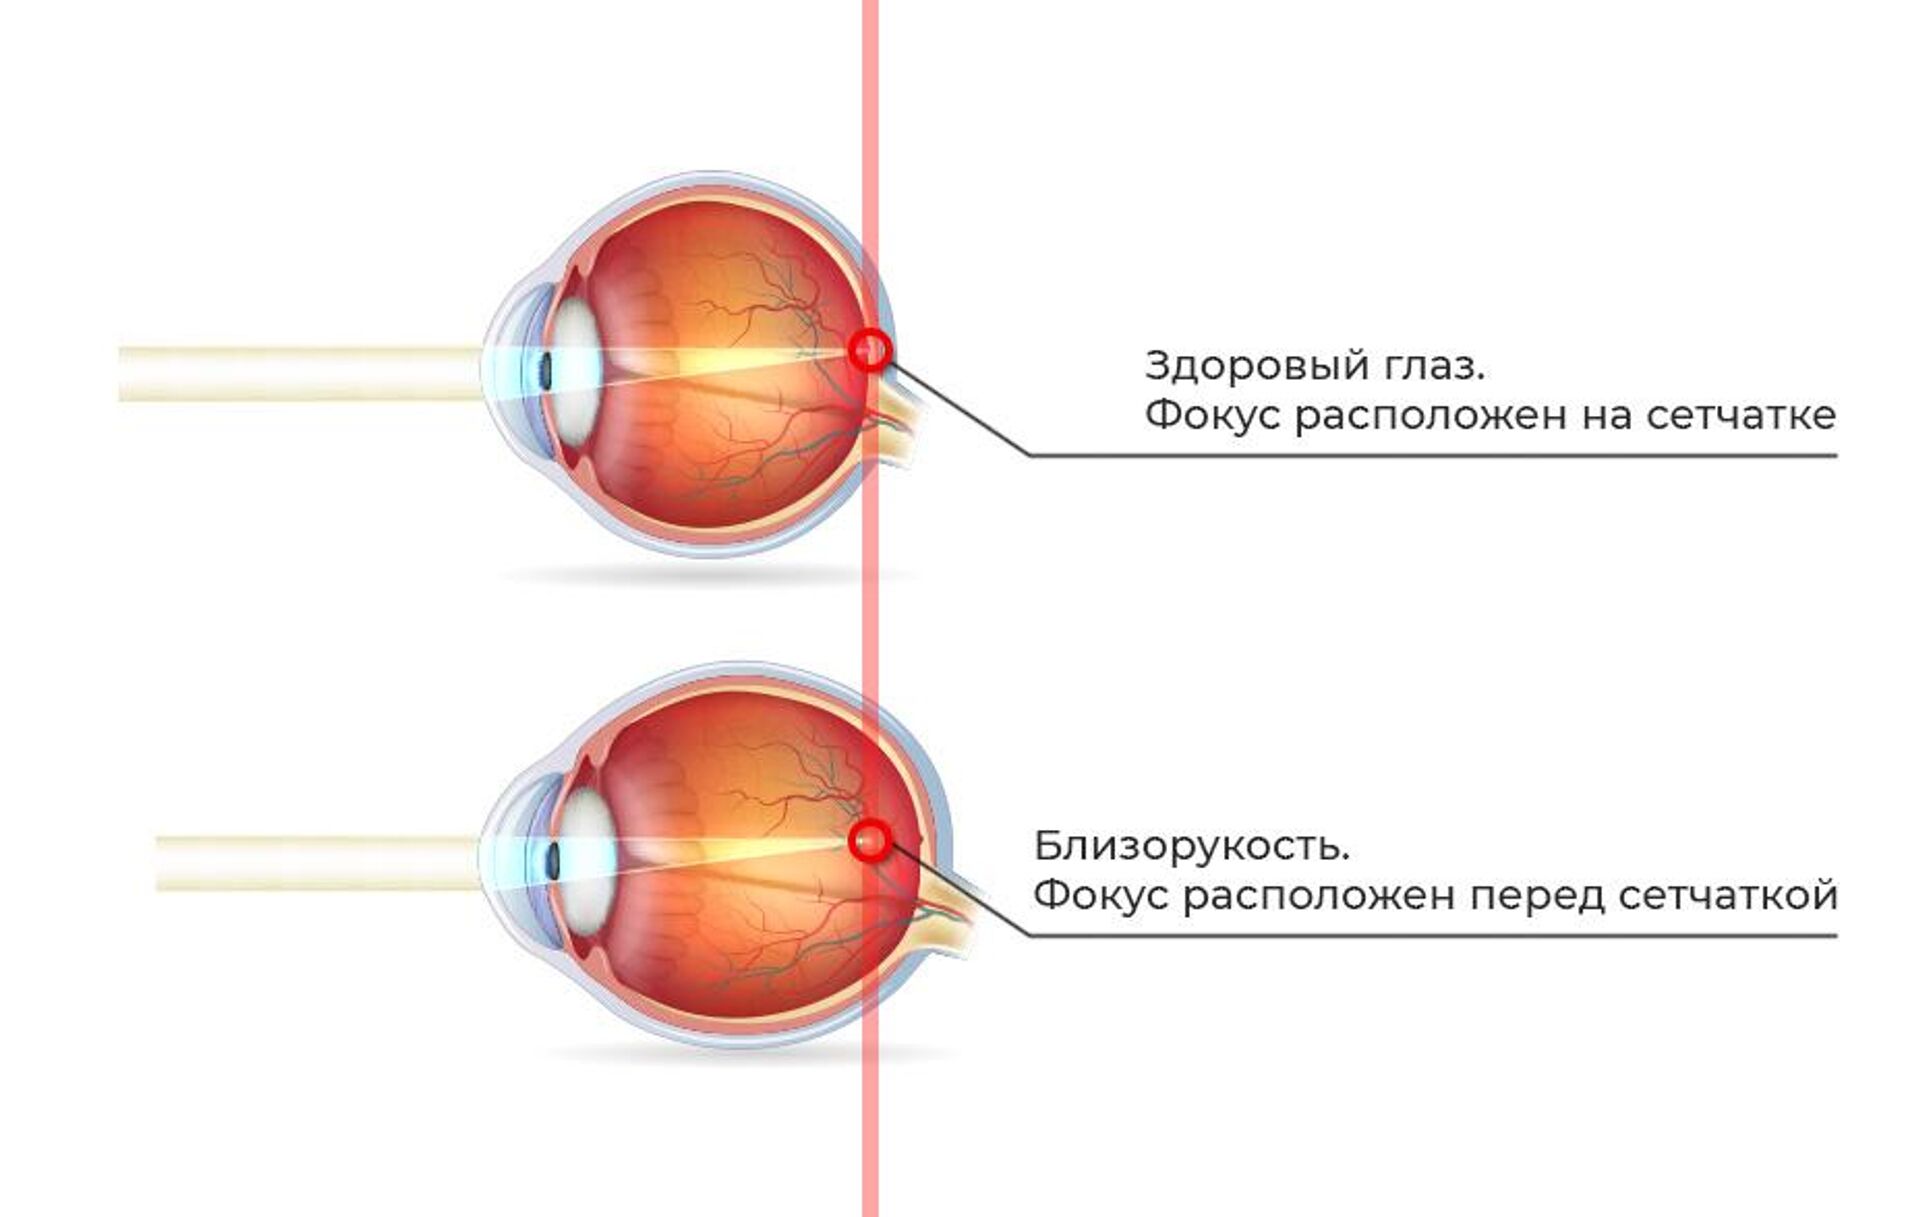 Глазное зрение 1. Близорукость (истинная и ложная формы патологии). Миопия фокус перед сетчаткой. Близорукость глазное яблоко удлиняется. Удлиненное глазное яблоко при близорукости.